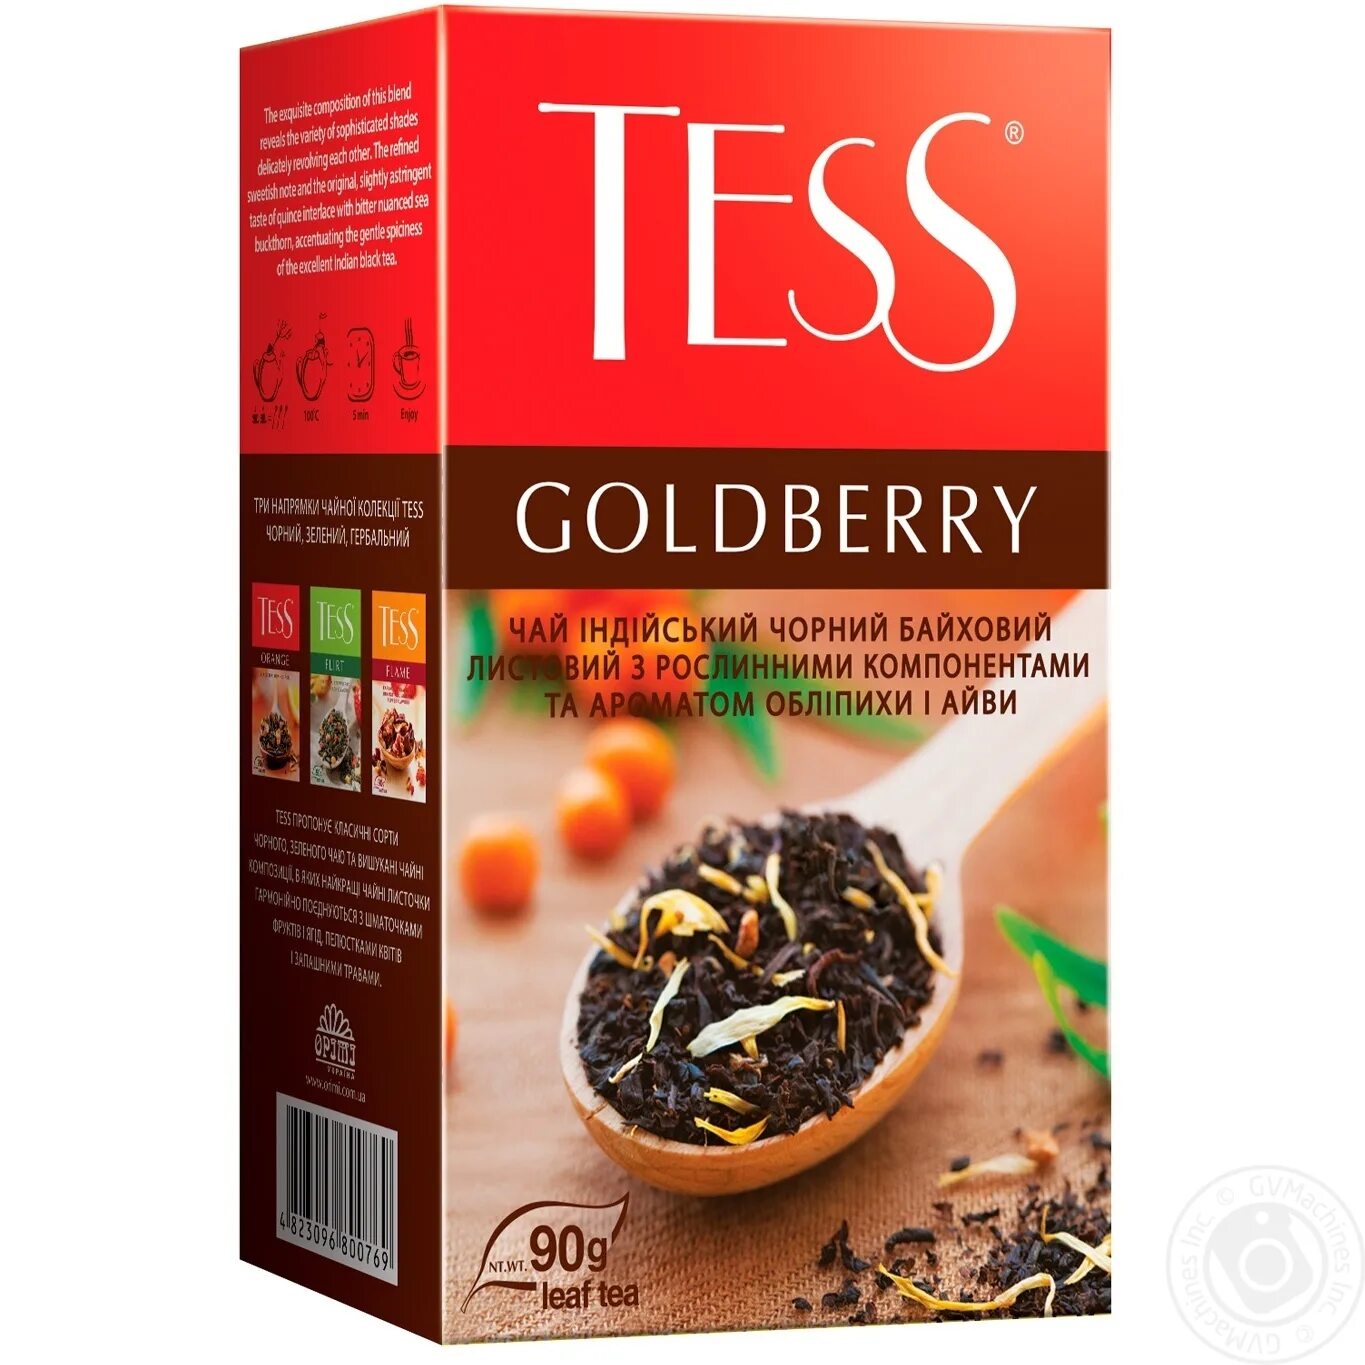 Чай tess шт. Чай Тесс рассыпной. Чай Тесс Голдберри. Goldberry чай. Tess чай 90.